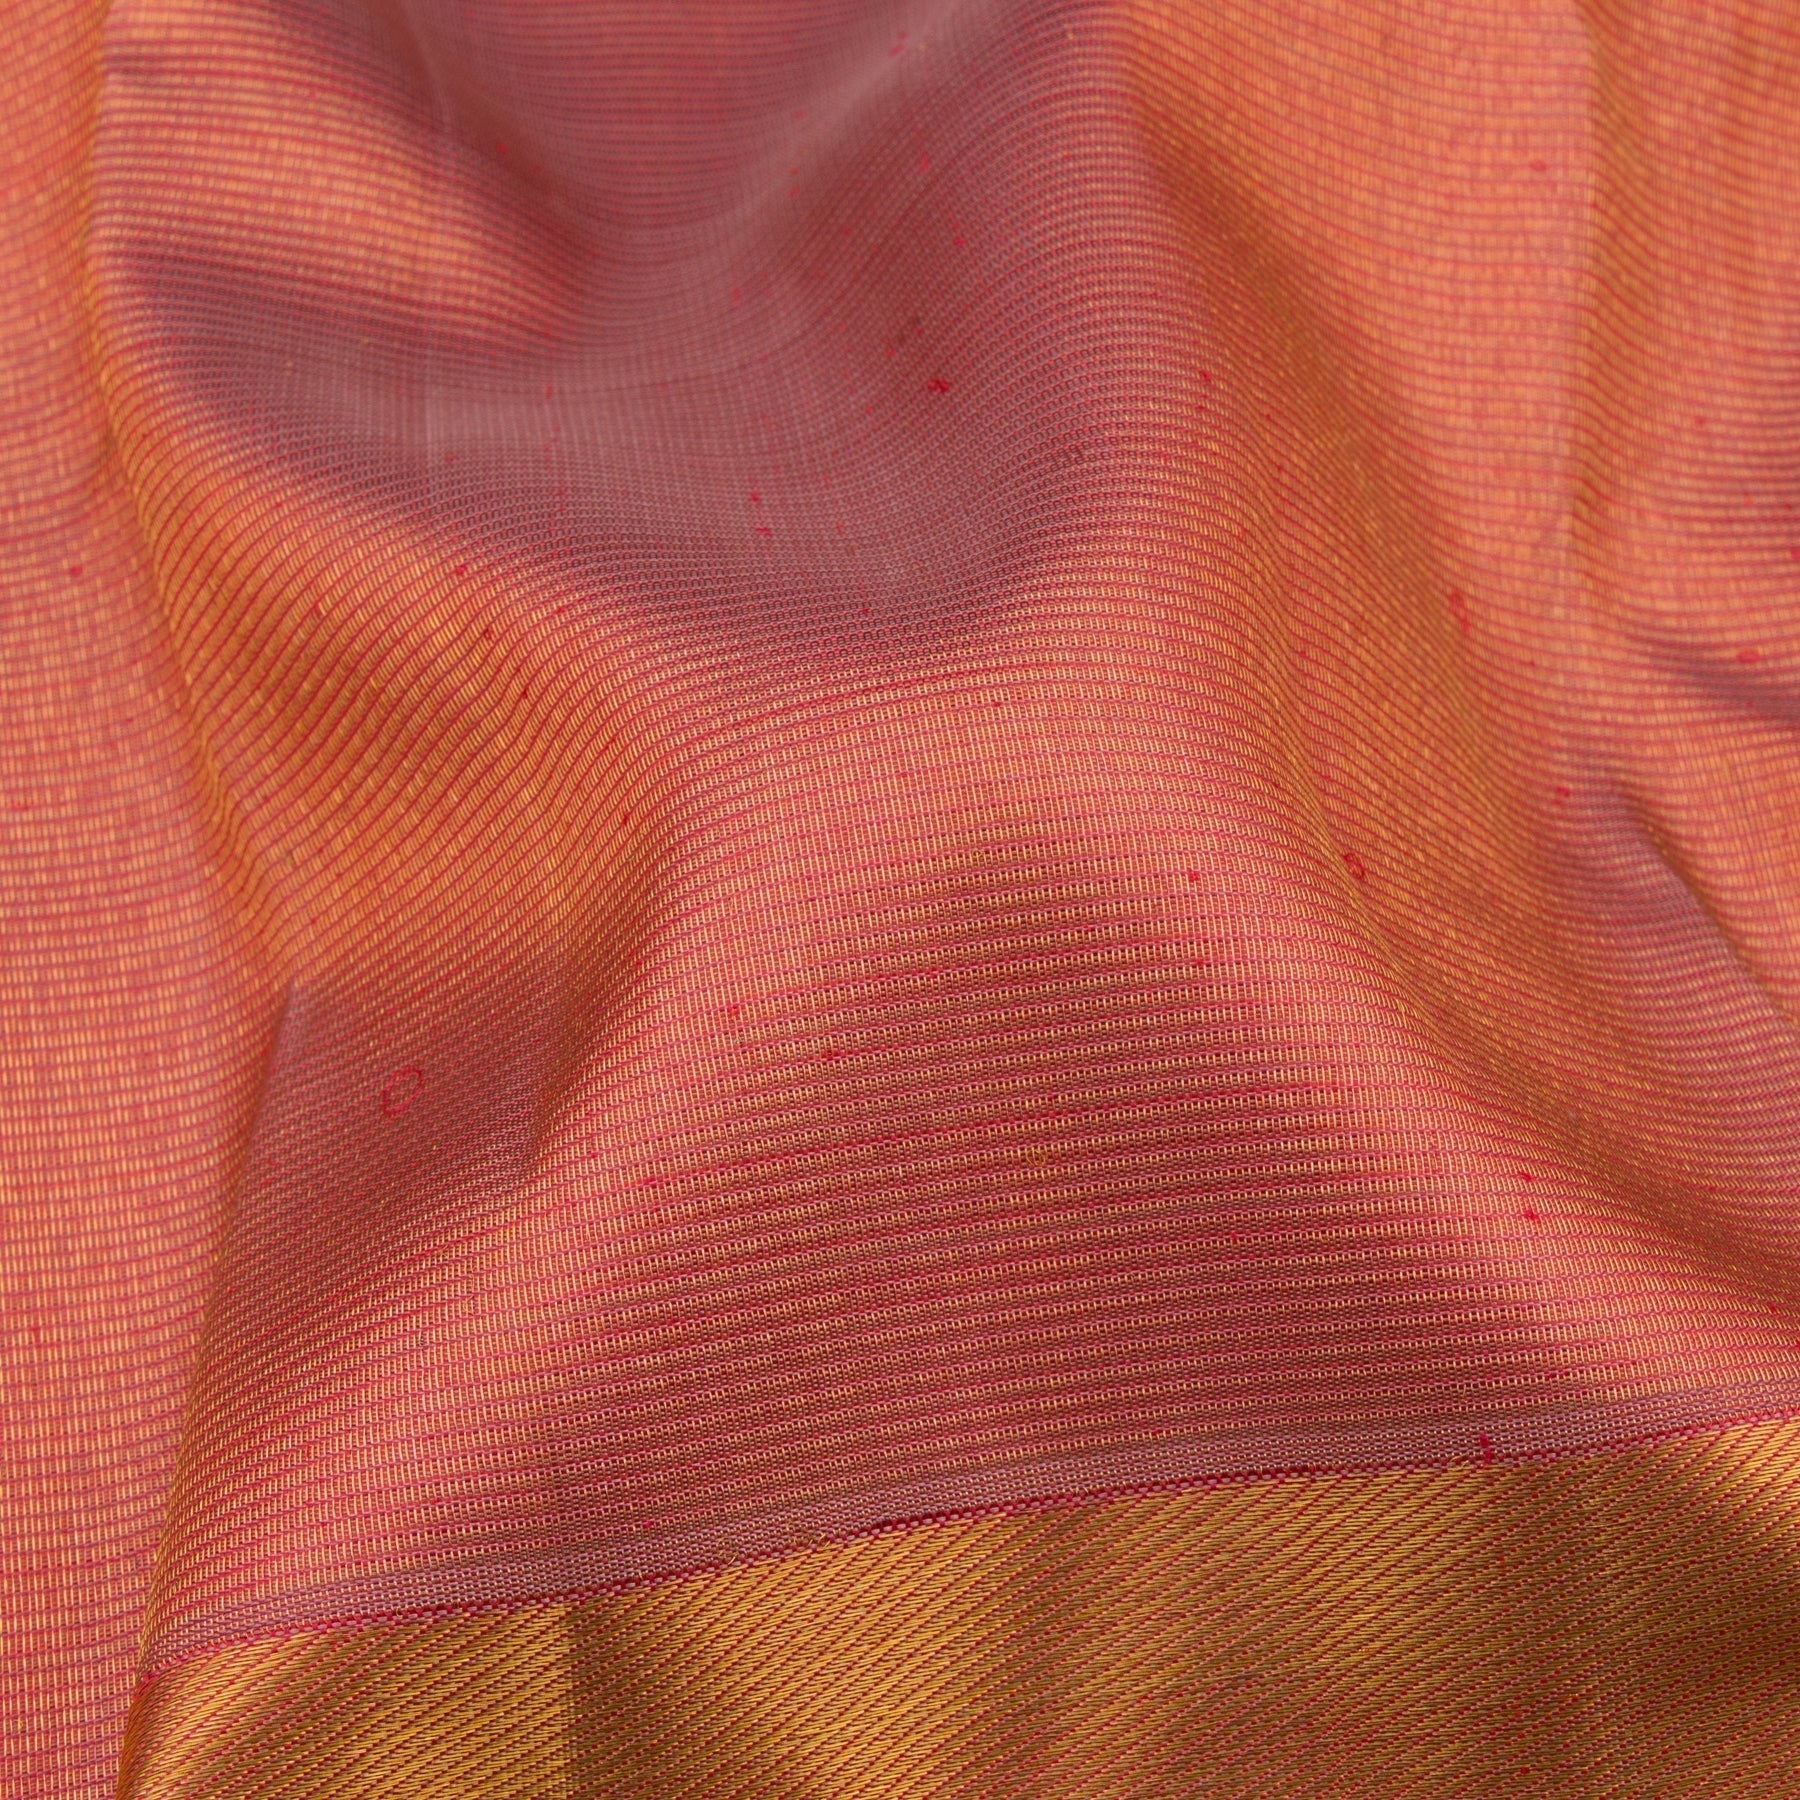 Kanakavalli Kanjivaram Silk Sari 22-599-HS001-07155 - Fabric View